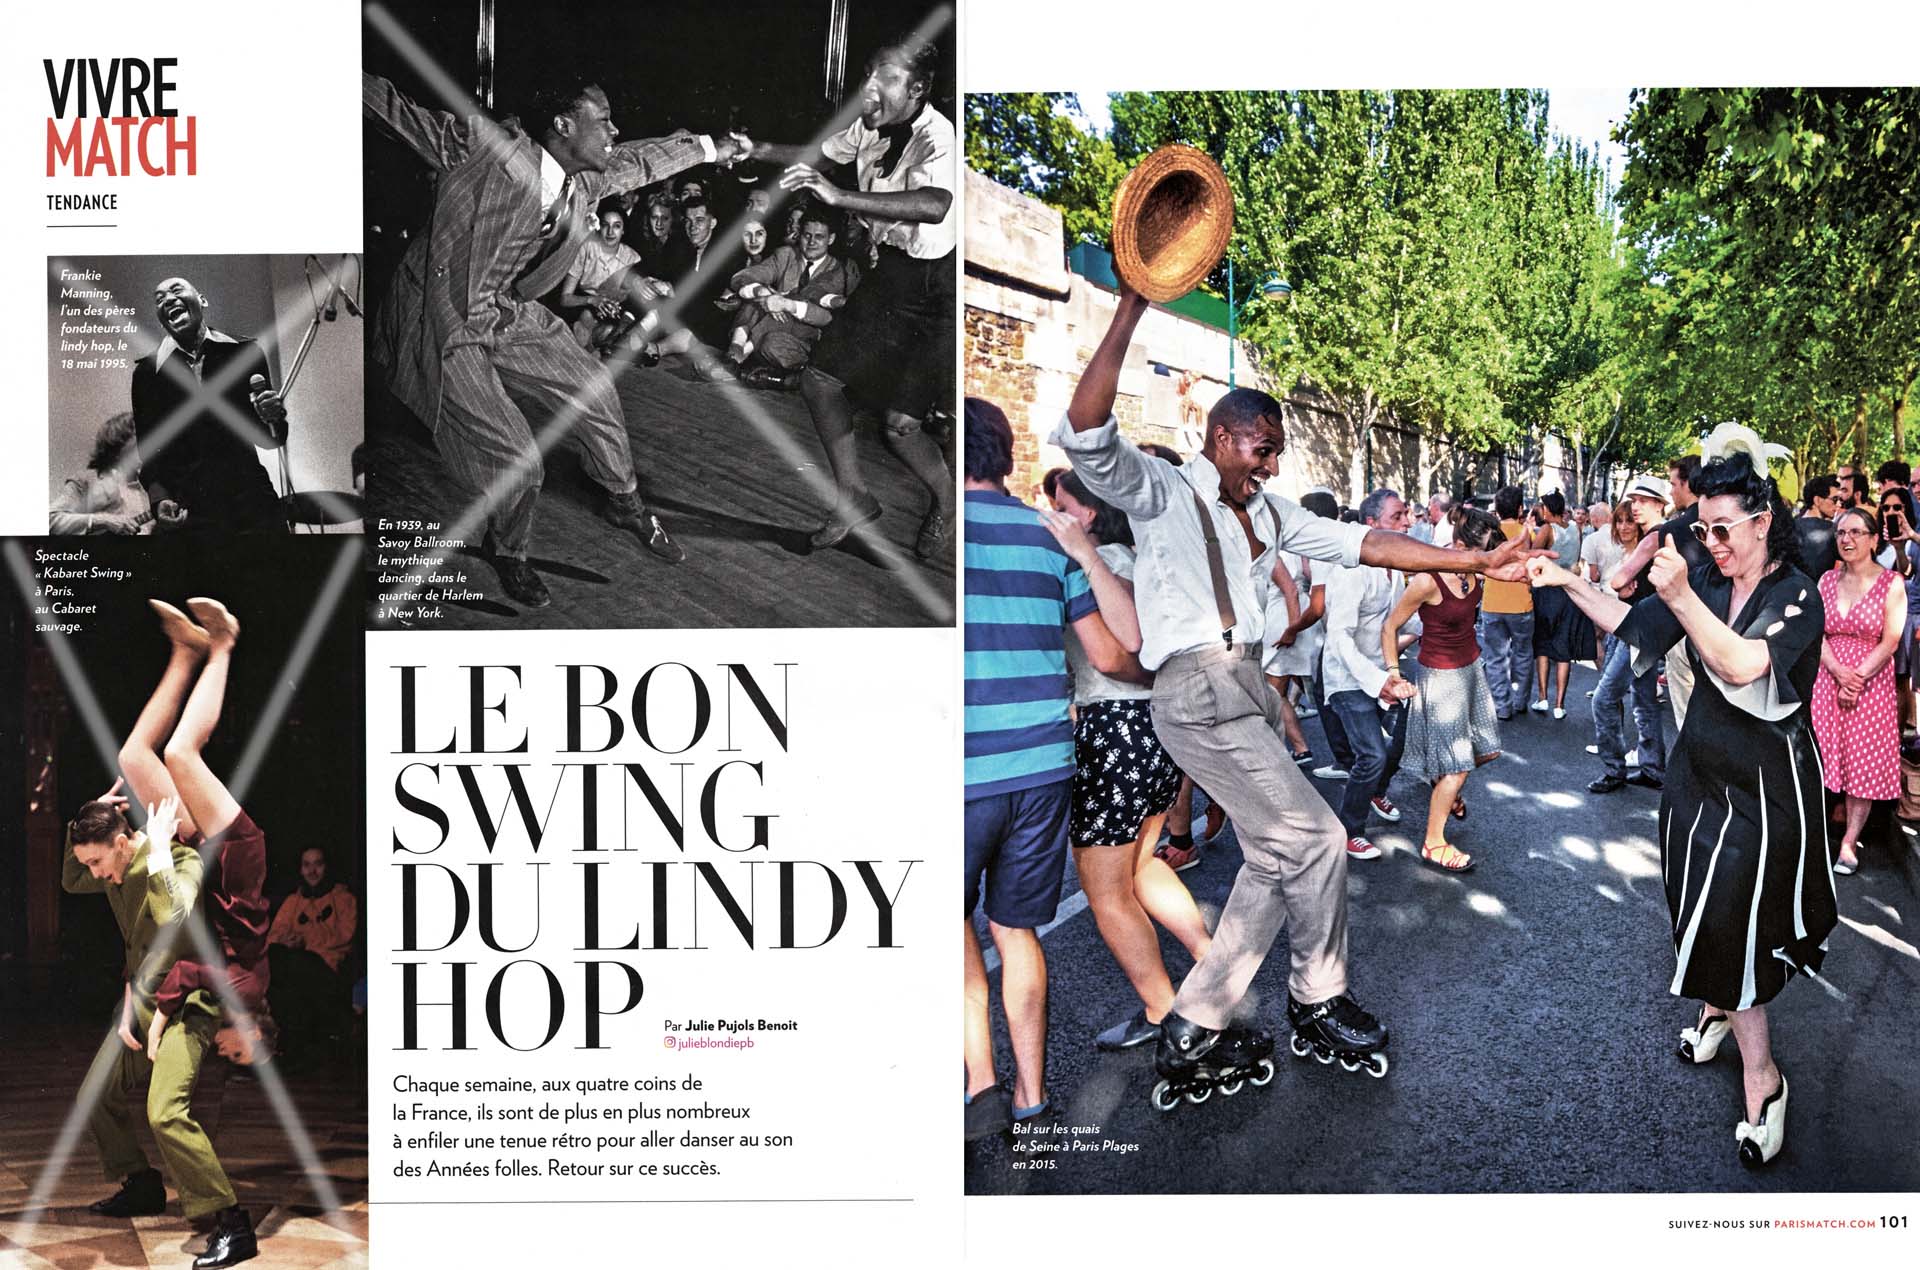 Chaque semaine, aux quatre coins de la France, ils sont de plus en plus nombreux à enfiler une tenue rétro pour aller danser au son des Années folles. Retour sur ce succès.